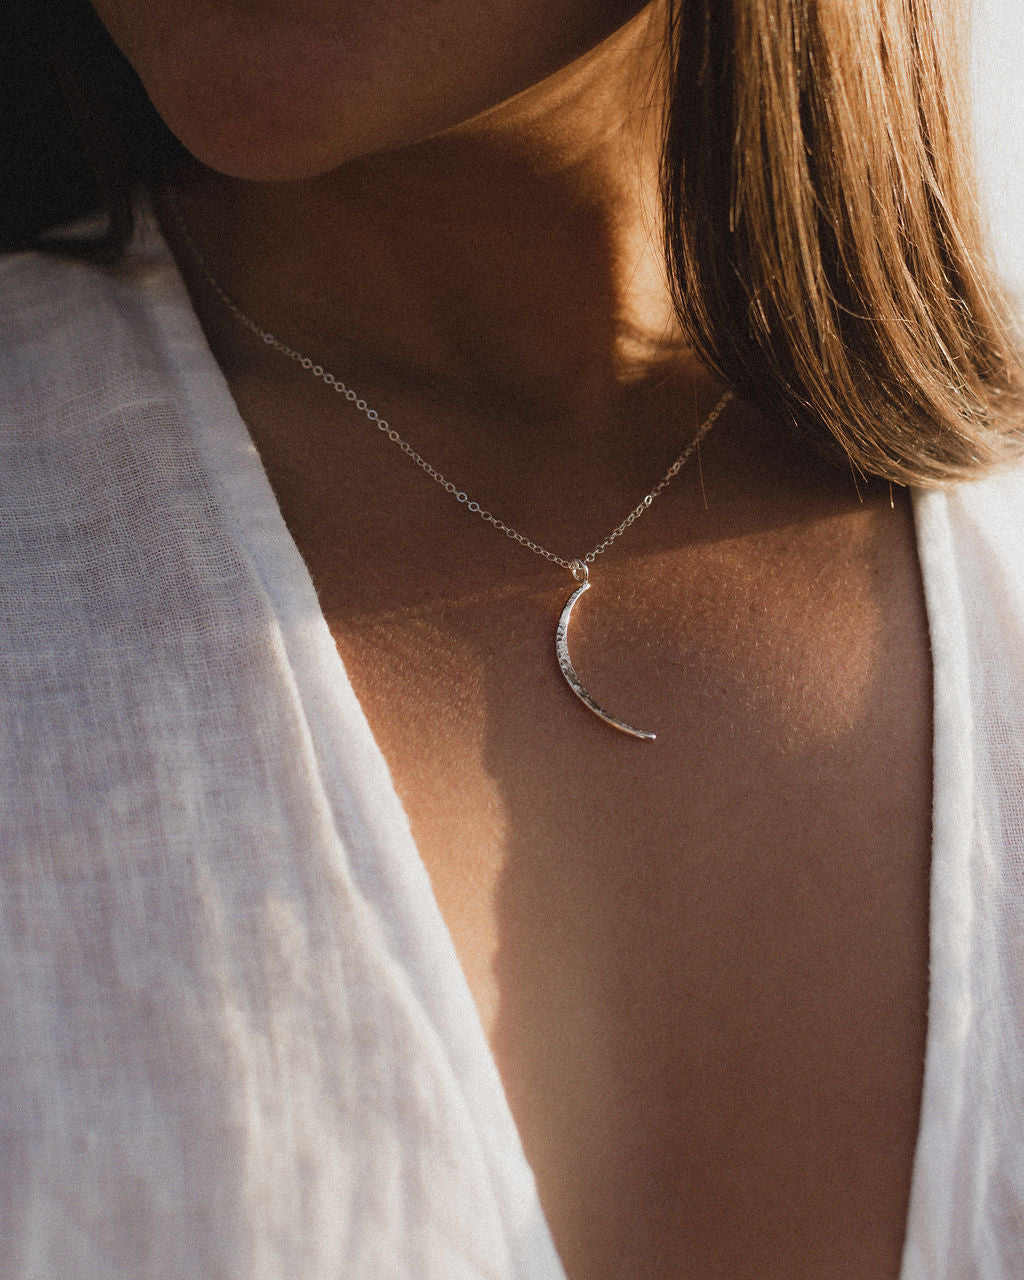 Silver Luna Necklace